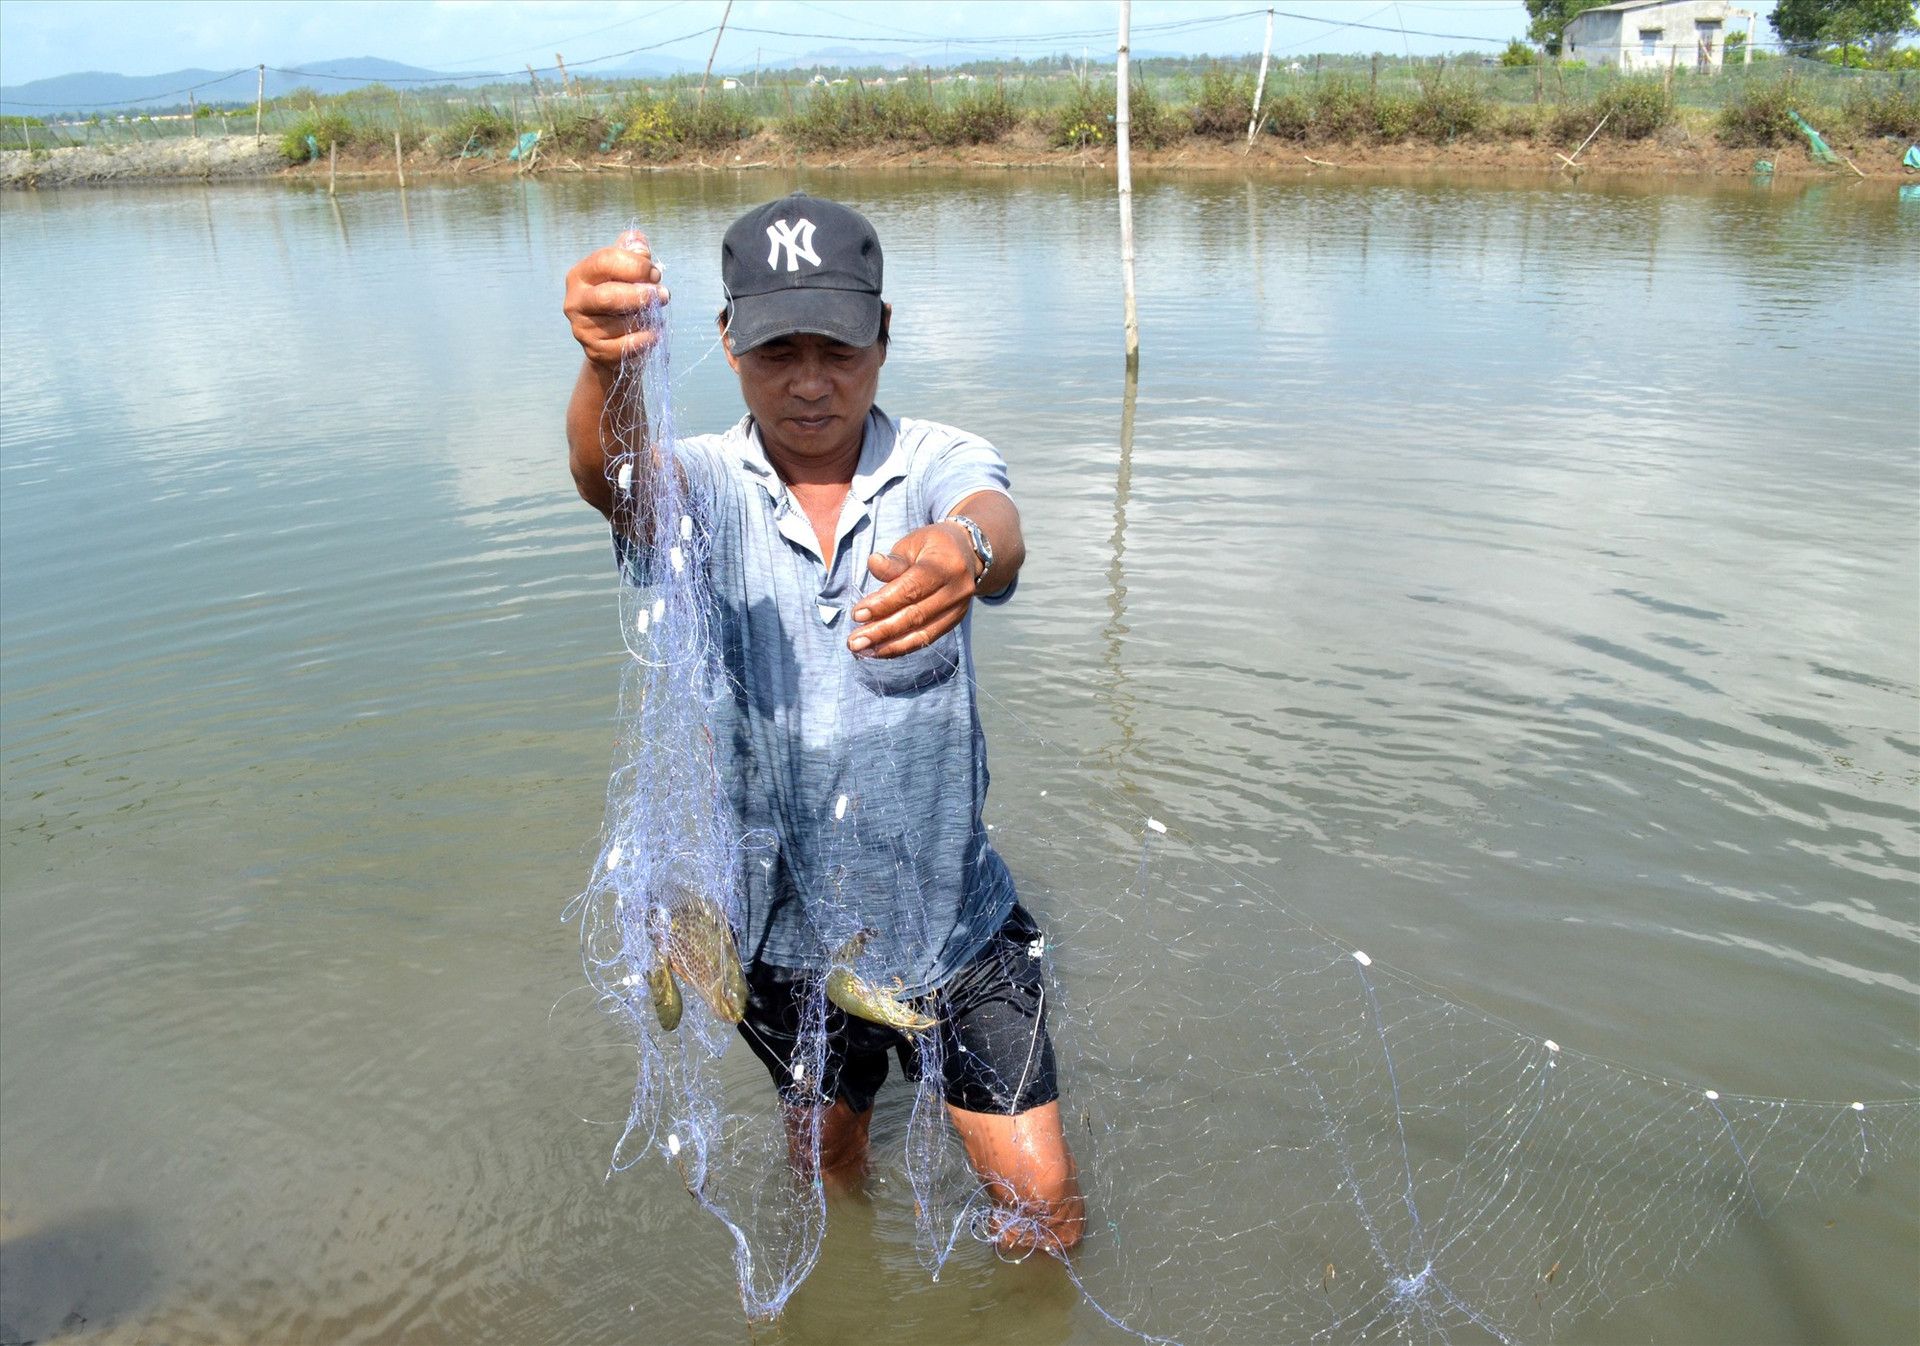 Nuôi ghép tôm sú, cá dìa, cua đem lại hiệu quả bước đầu cho người nông dân xã Tam Hòa. Ảnh: NGUYỄN QUANG